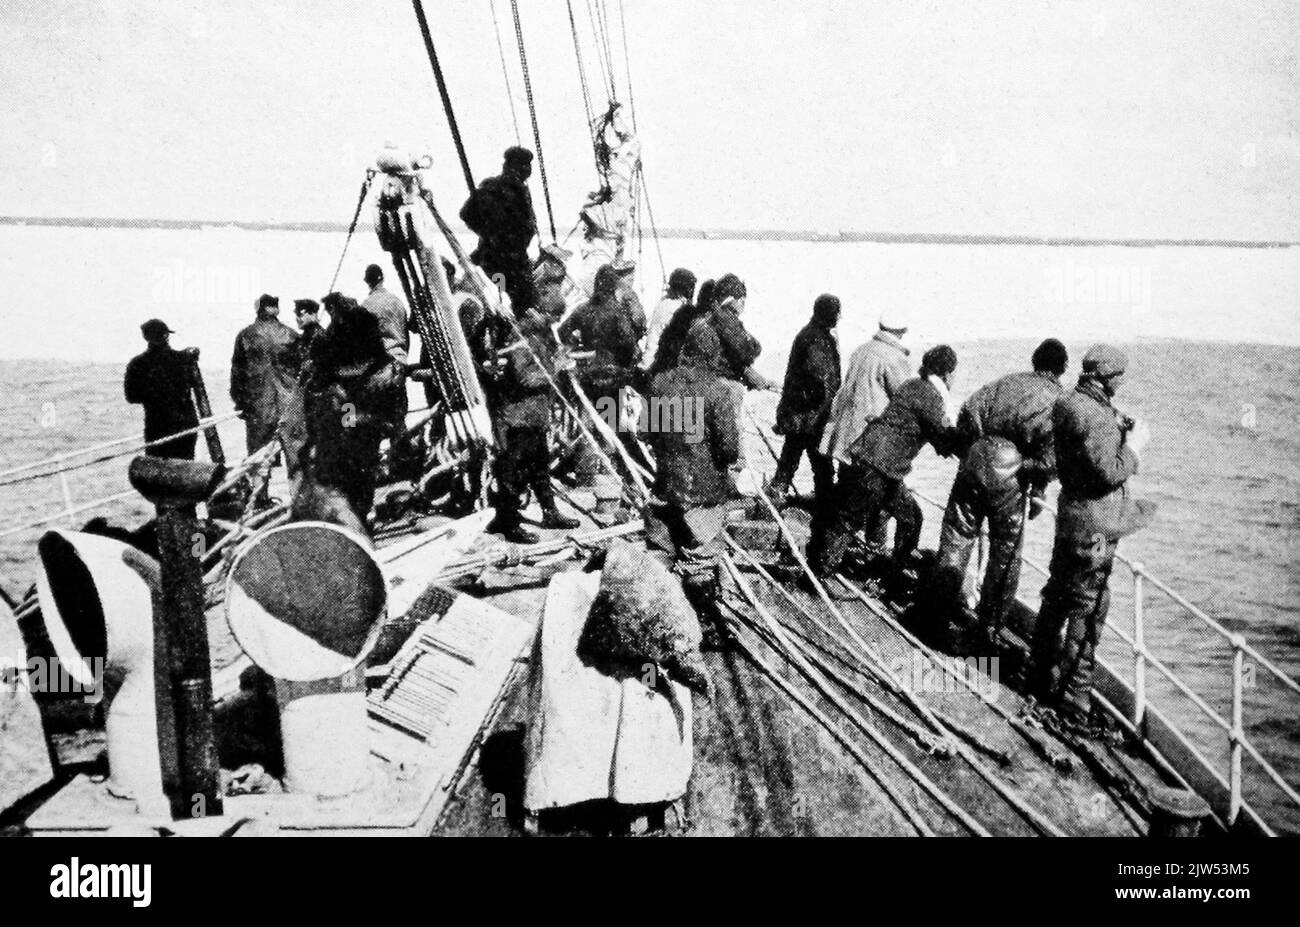 Terra Nova entre dans le peloton de glace, expédition antarctique britannique dirigée par le capitaine Scott 1910 - 1913 Banque D'Images